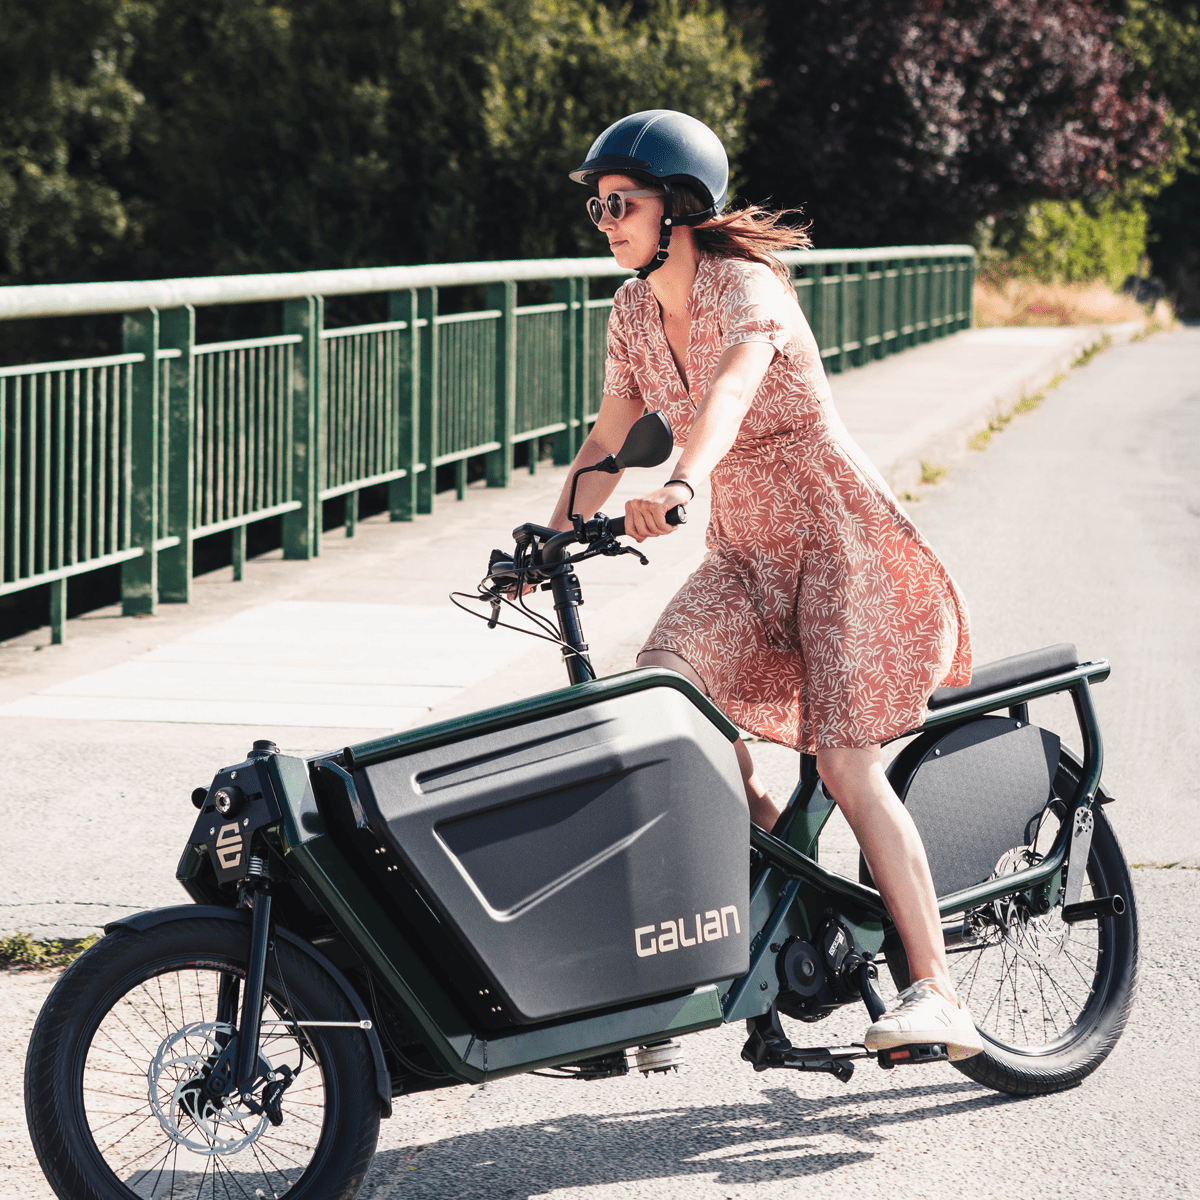 Vélo cargo électrique haut de gamme Galian Formidable conduit par une femme